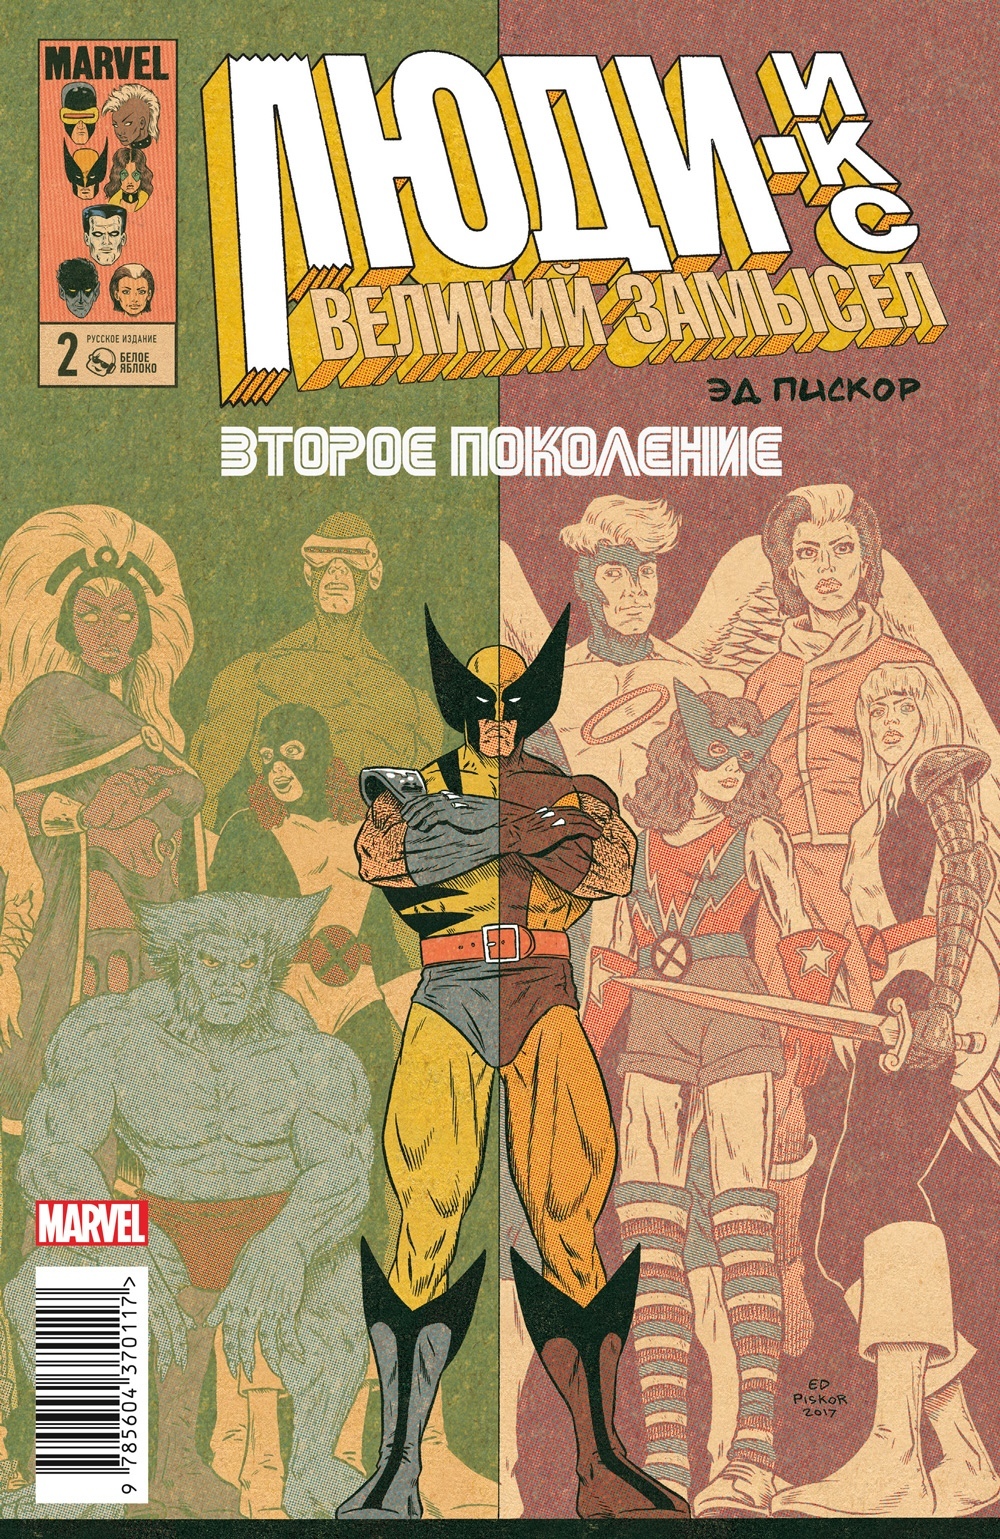 Комикс Люди Икс: Великий замысел – Второе поколение №2. Оригинальная обложка